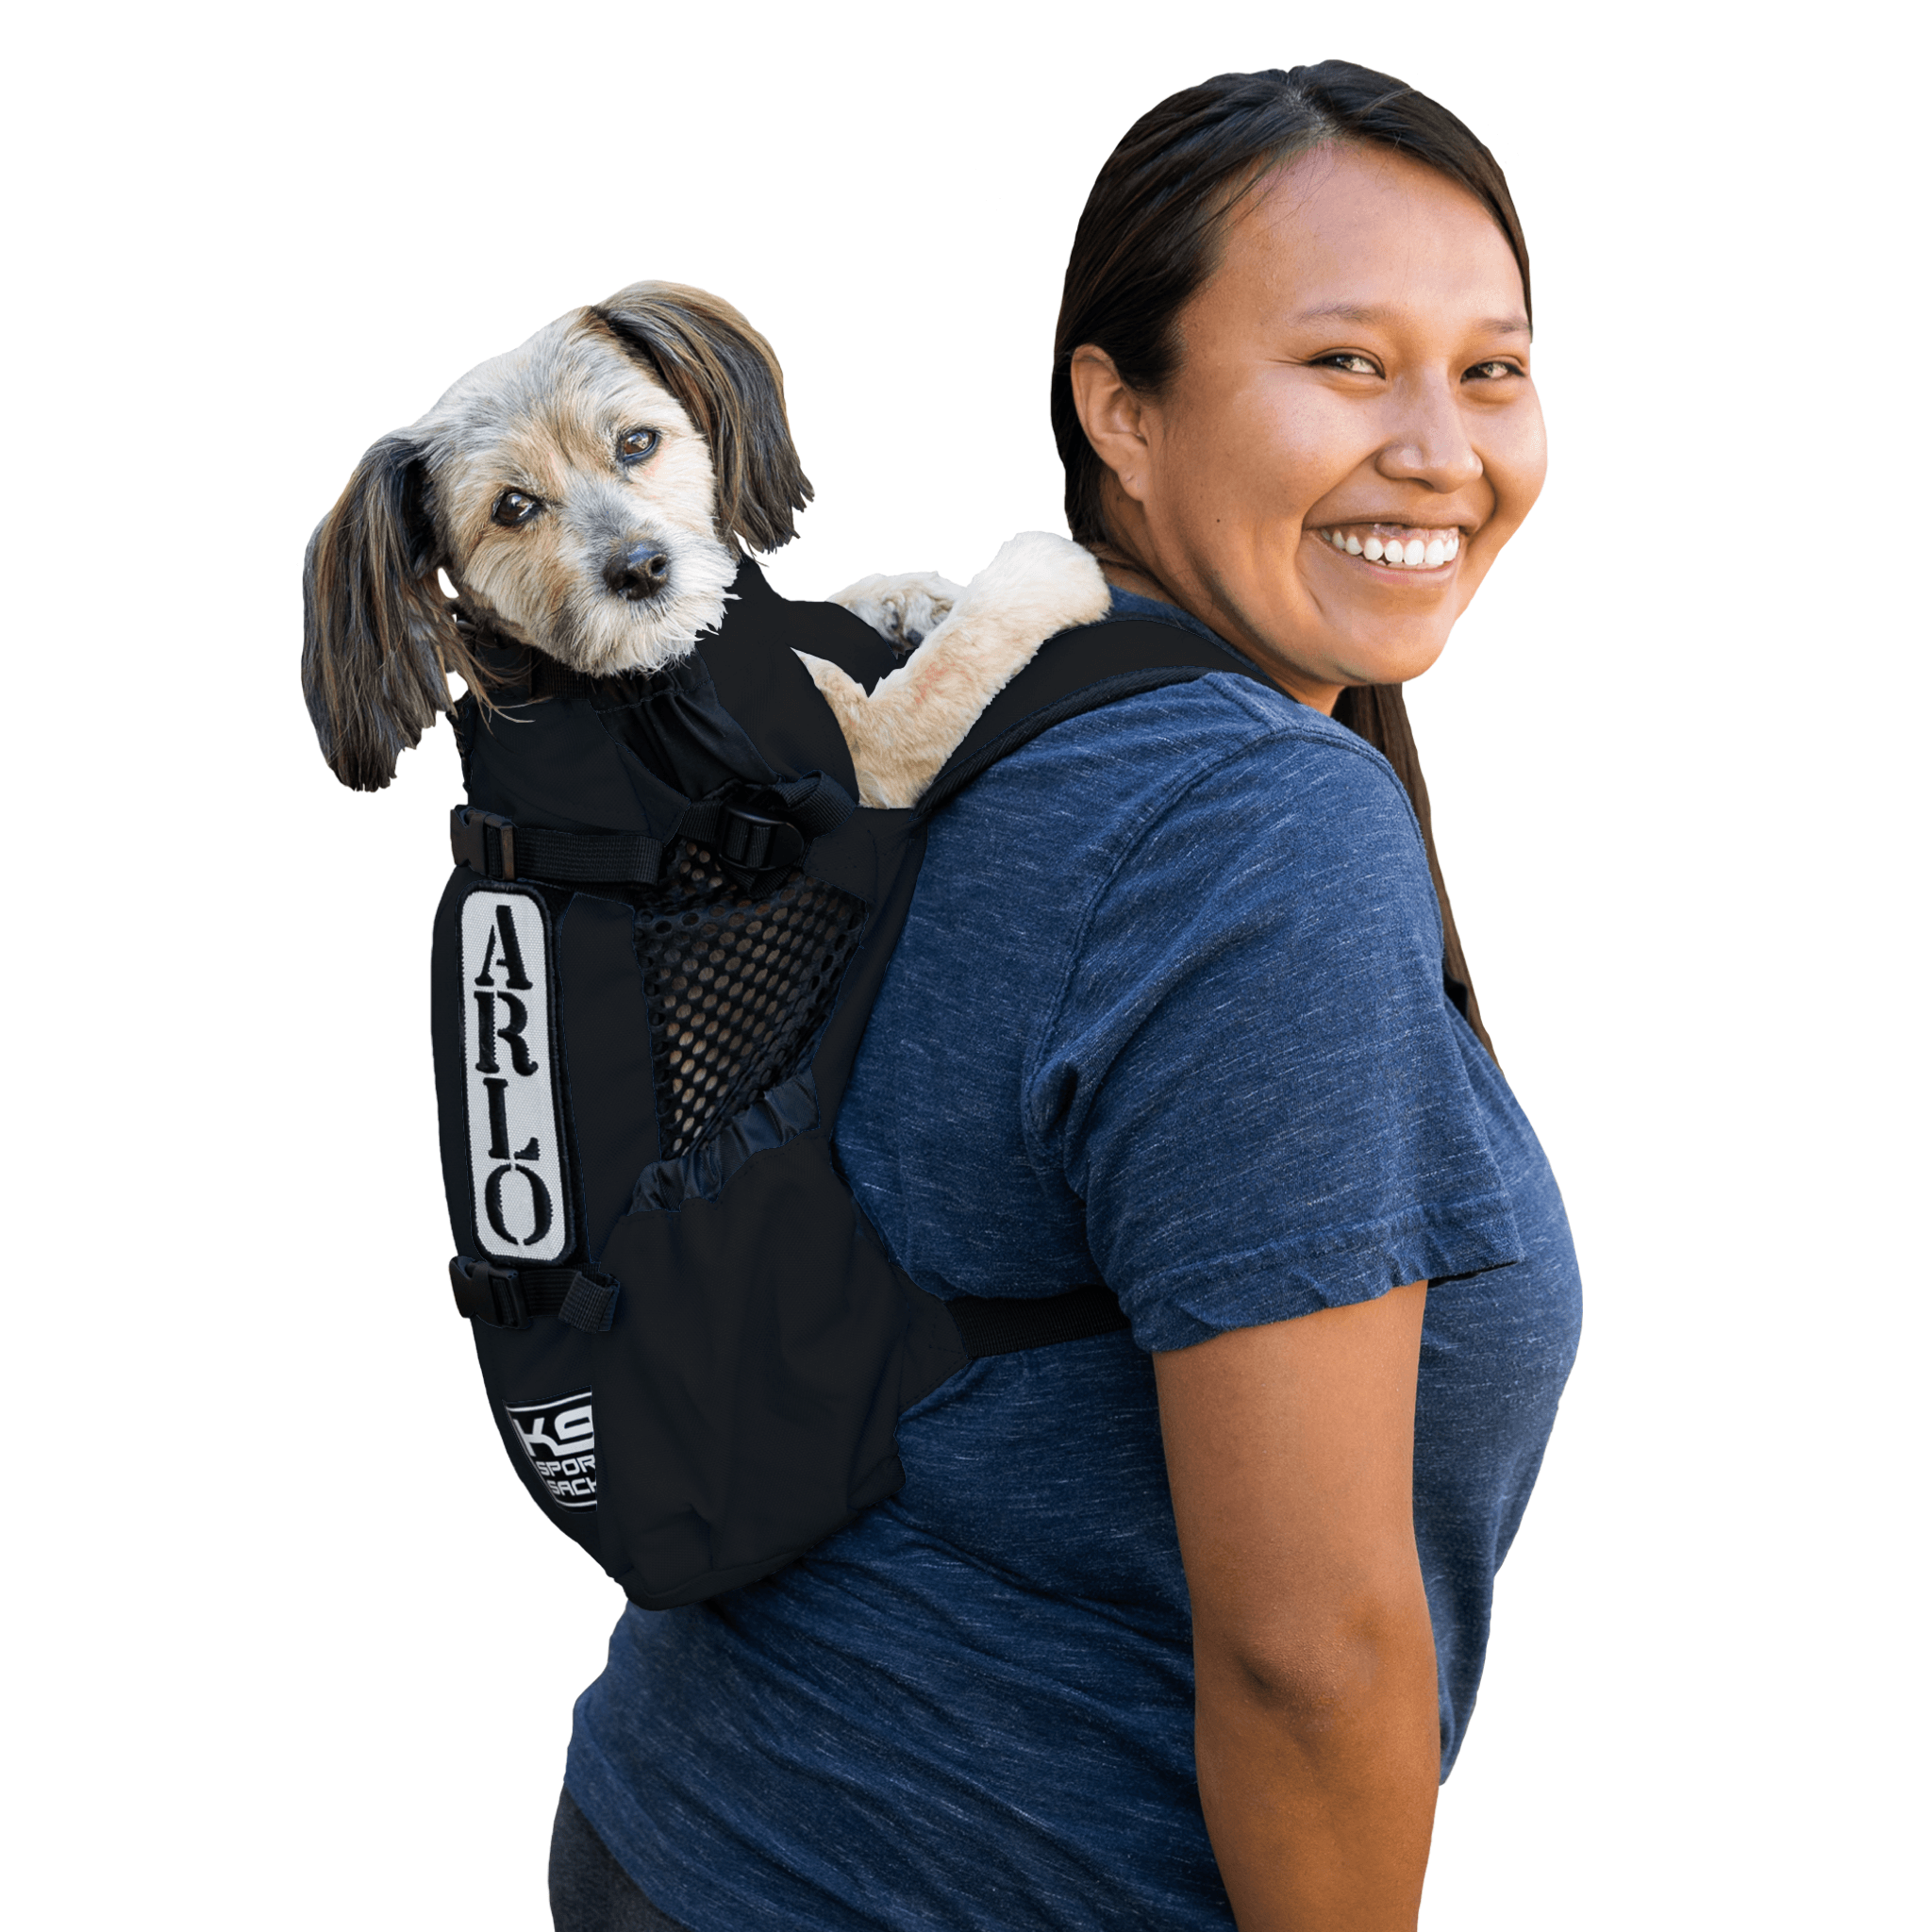 Air 2 | Original Backpack Dog Carrier – K9 Sport Sack